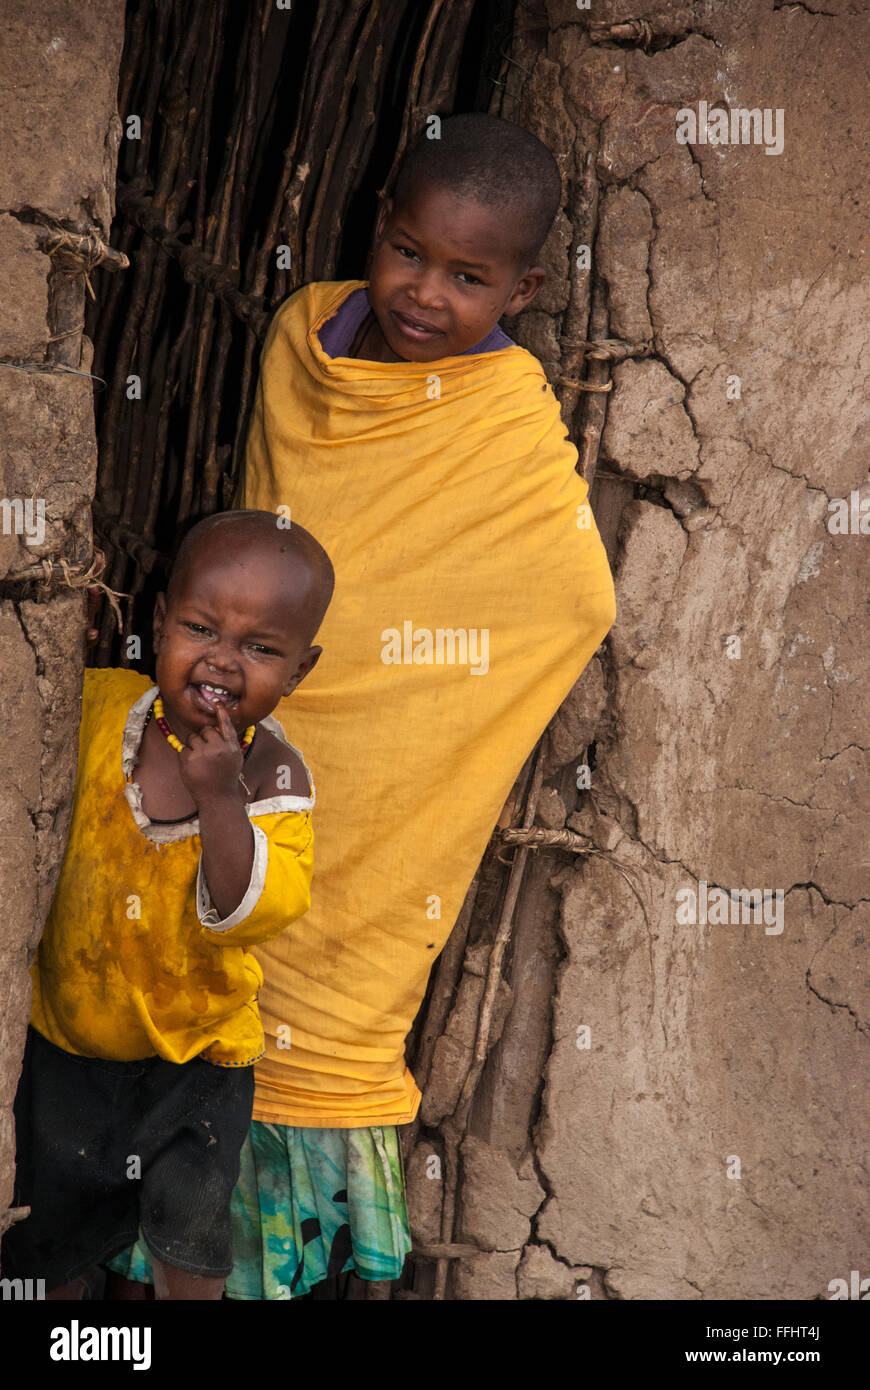 Deux enfants Masai dans l'embrasure d'une hutte de terre dans un village de la Masai Mara, Kenya, Afrique Banque D'Images